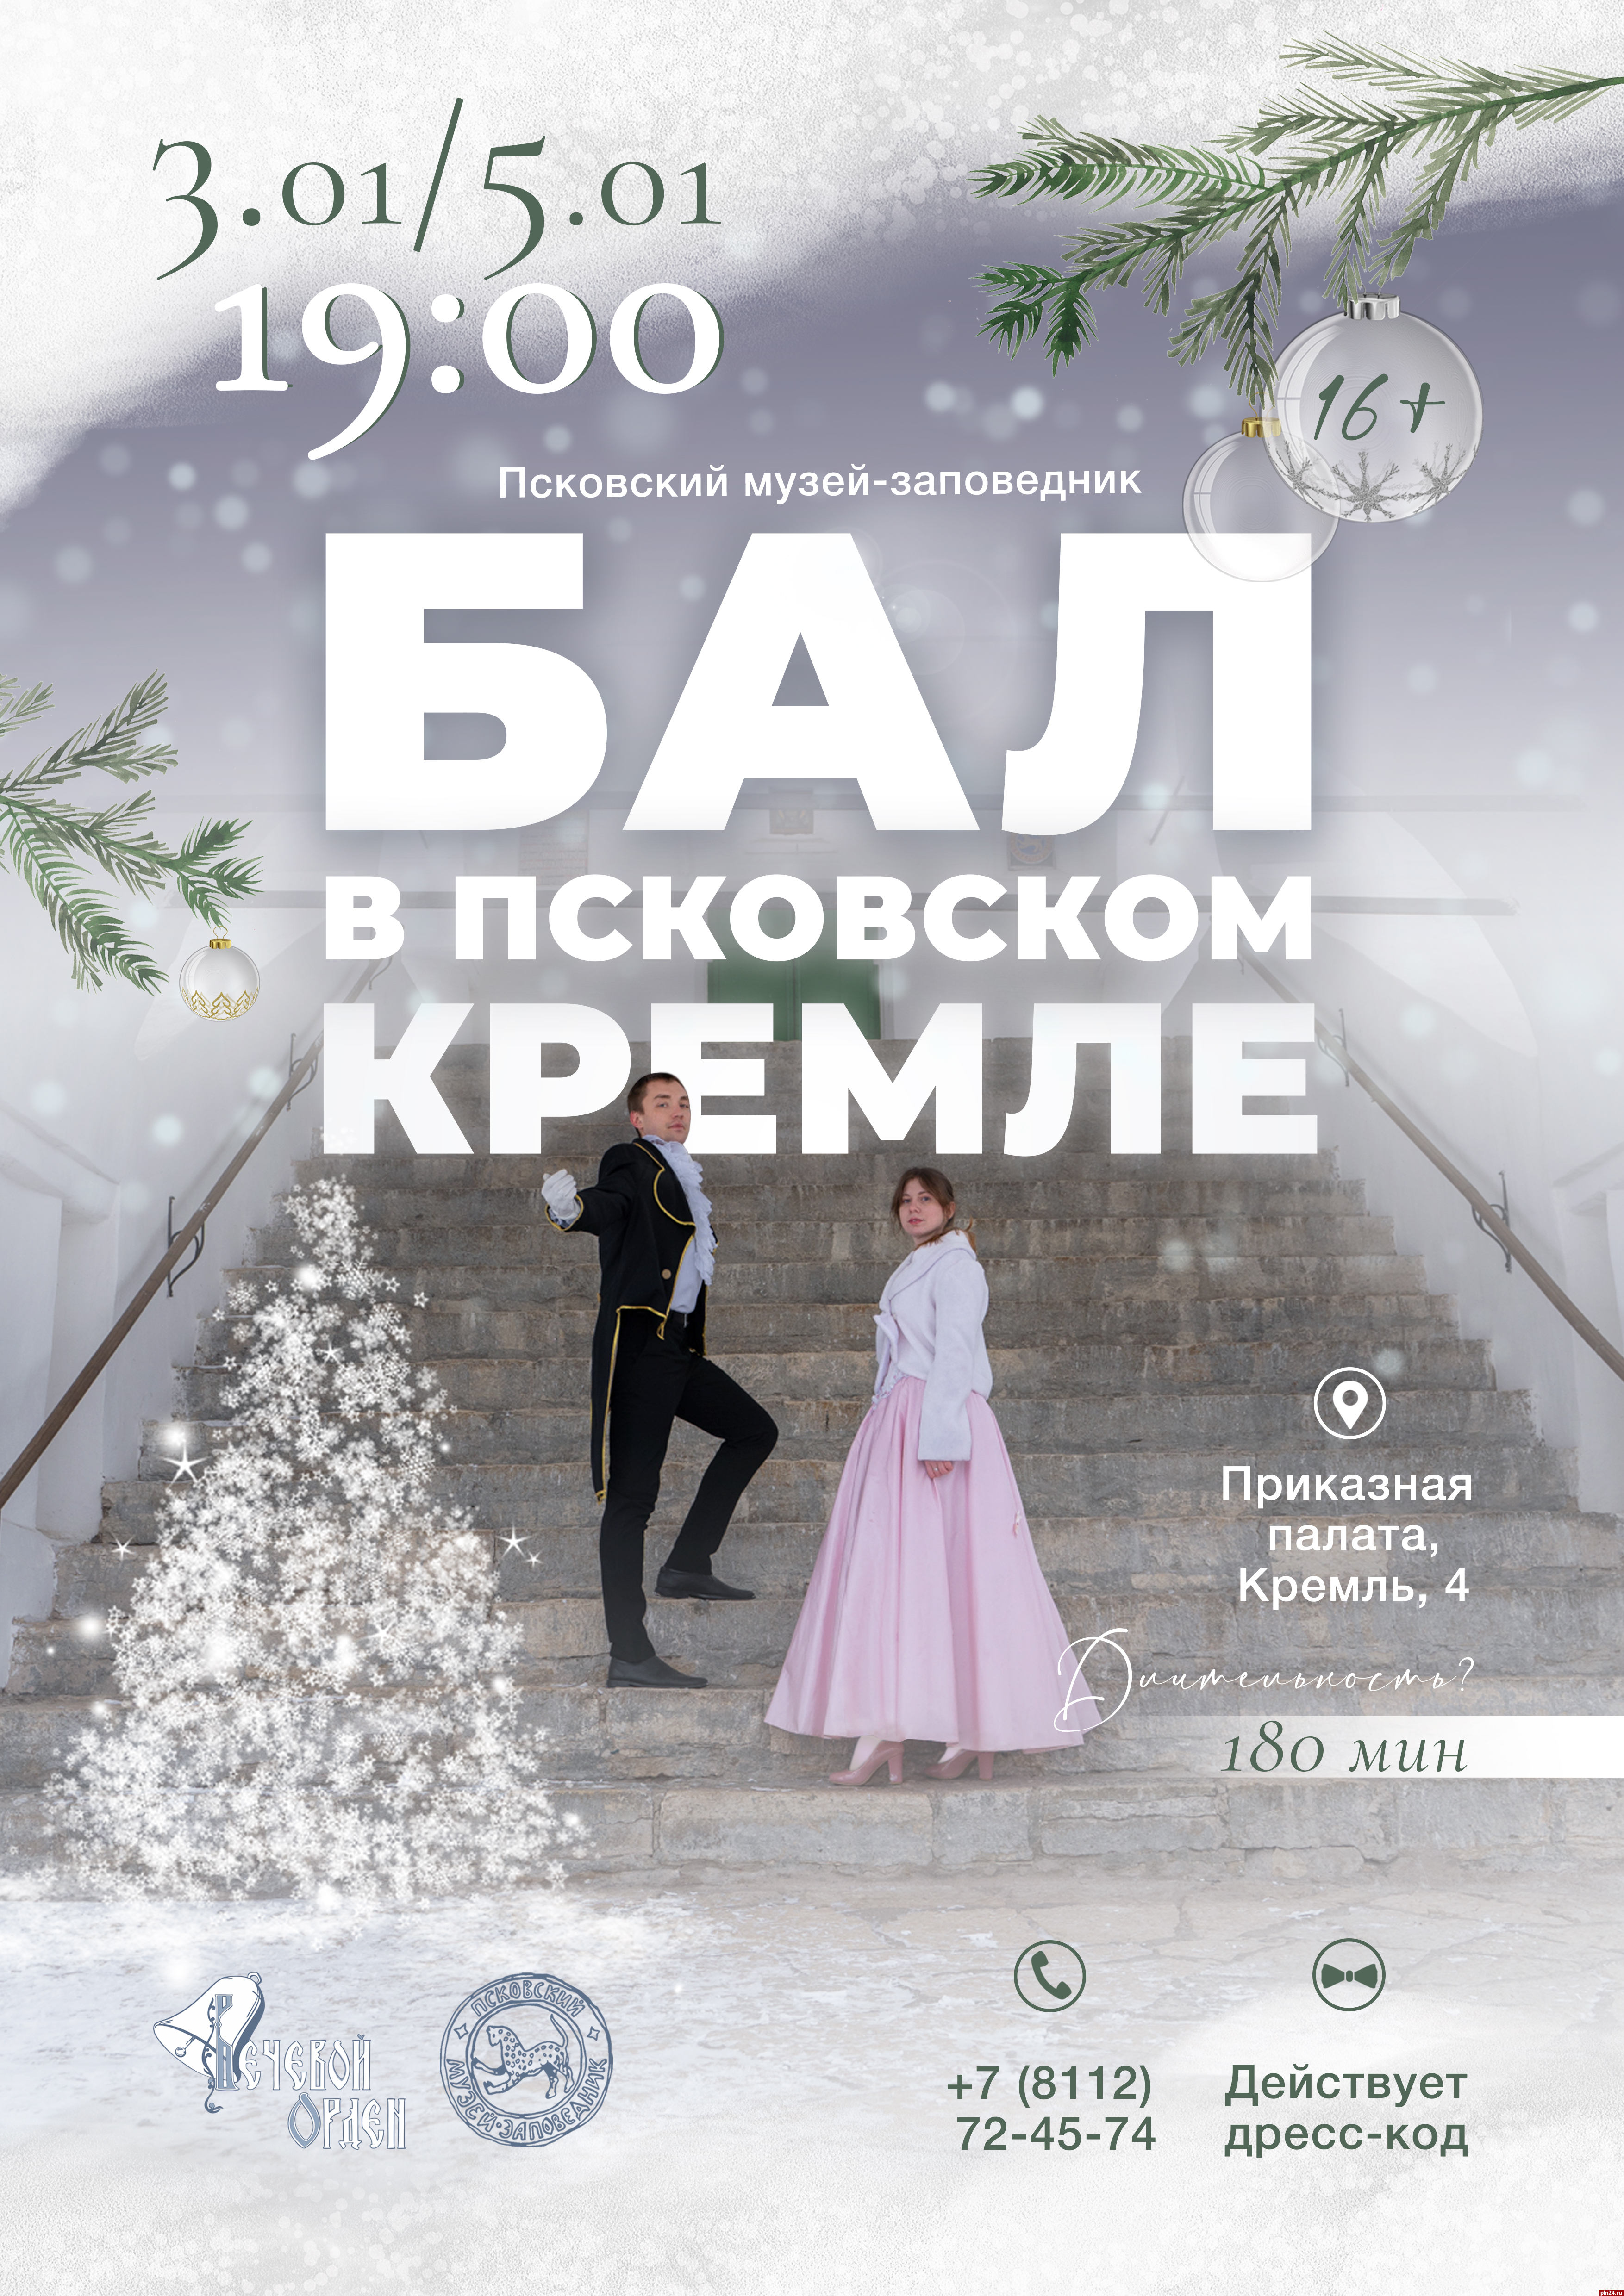 Бал пройдет в Псковском кремле 3 и 5 января